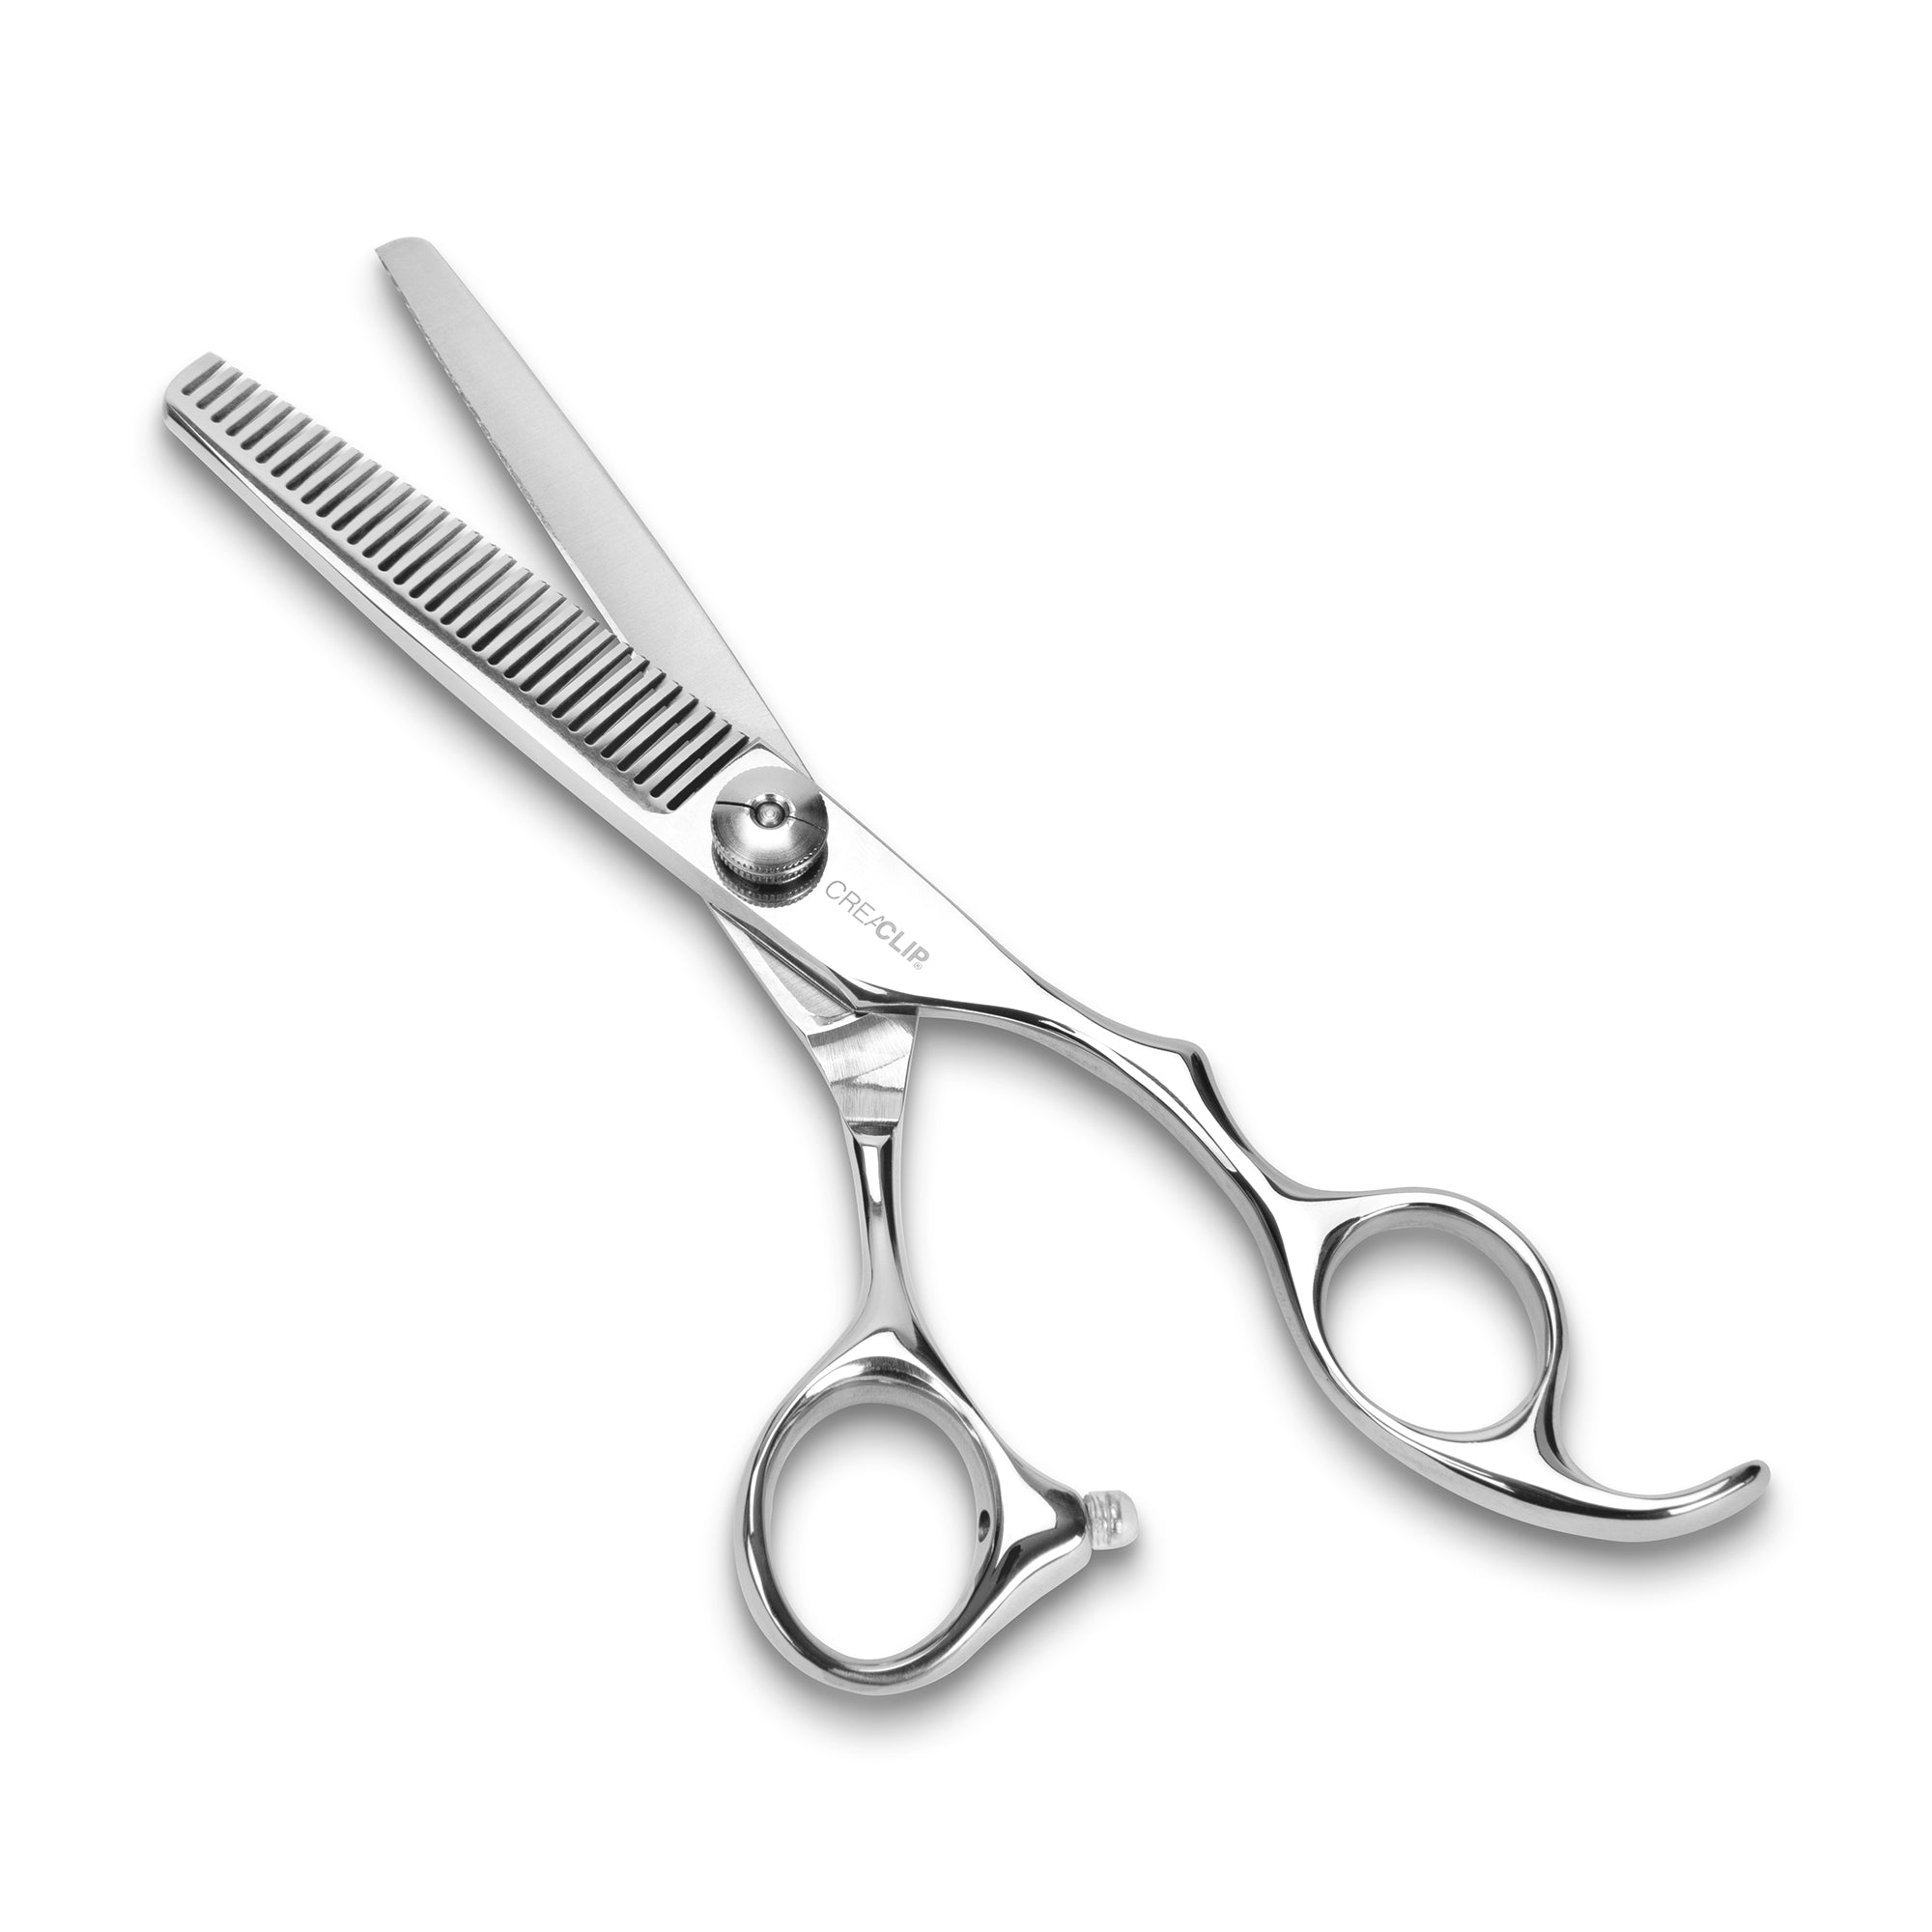 Buy CreaClip Premium Professional Thinning Scissors at $19.99 Online